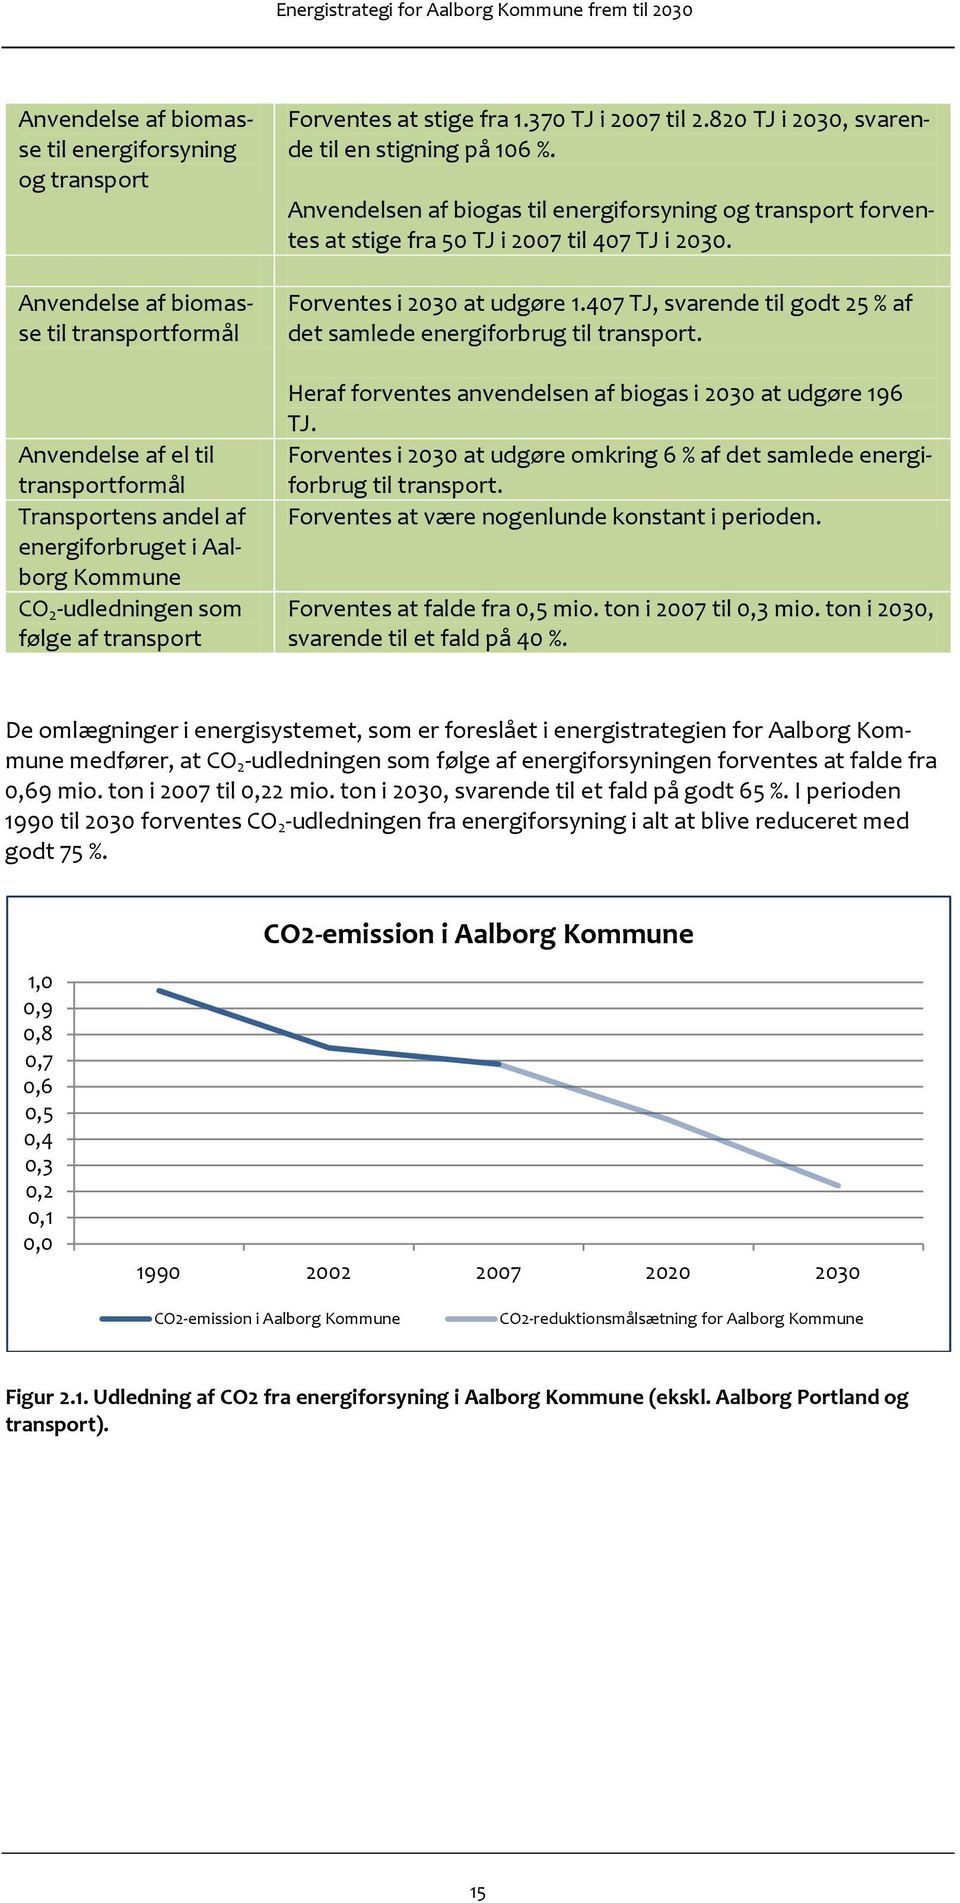 Anvendelsen af biogas til energiforsyning og transport forventes at stige fra 50 TJ i 2007 til 407 TJ i 2030. Forventes i 2030 at udgøre 1.